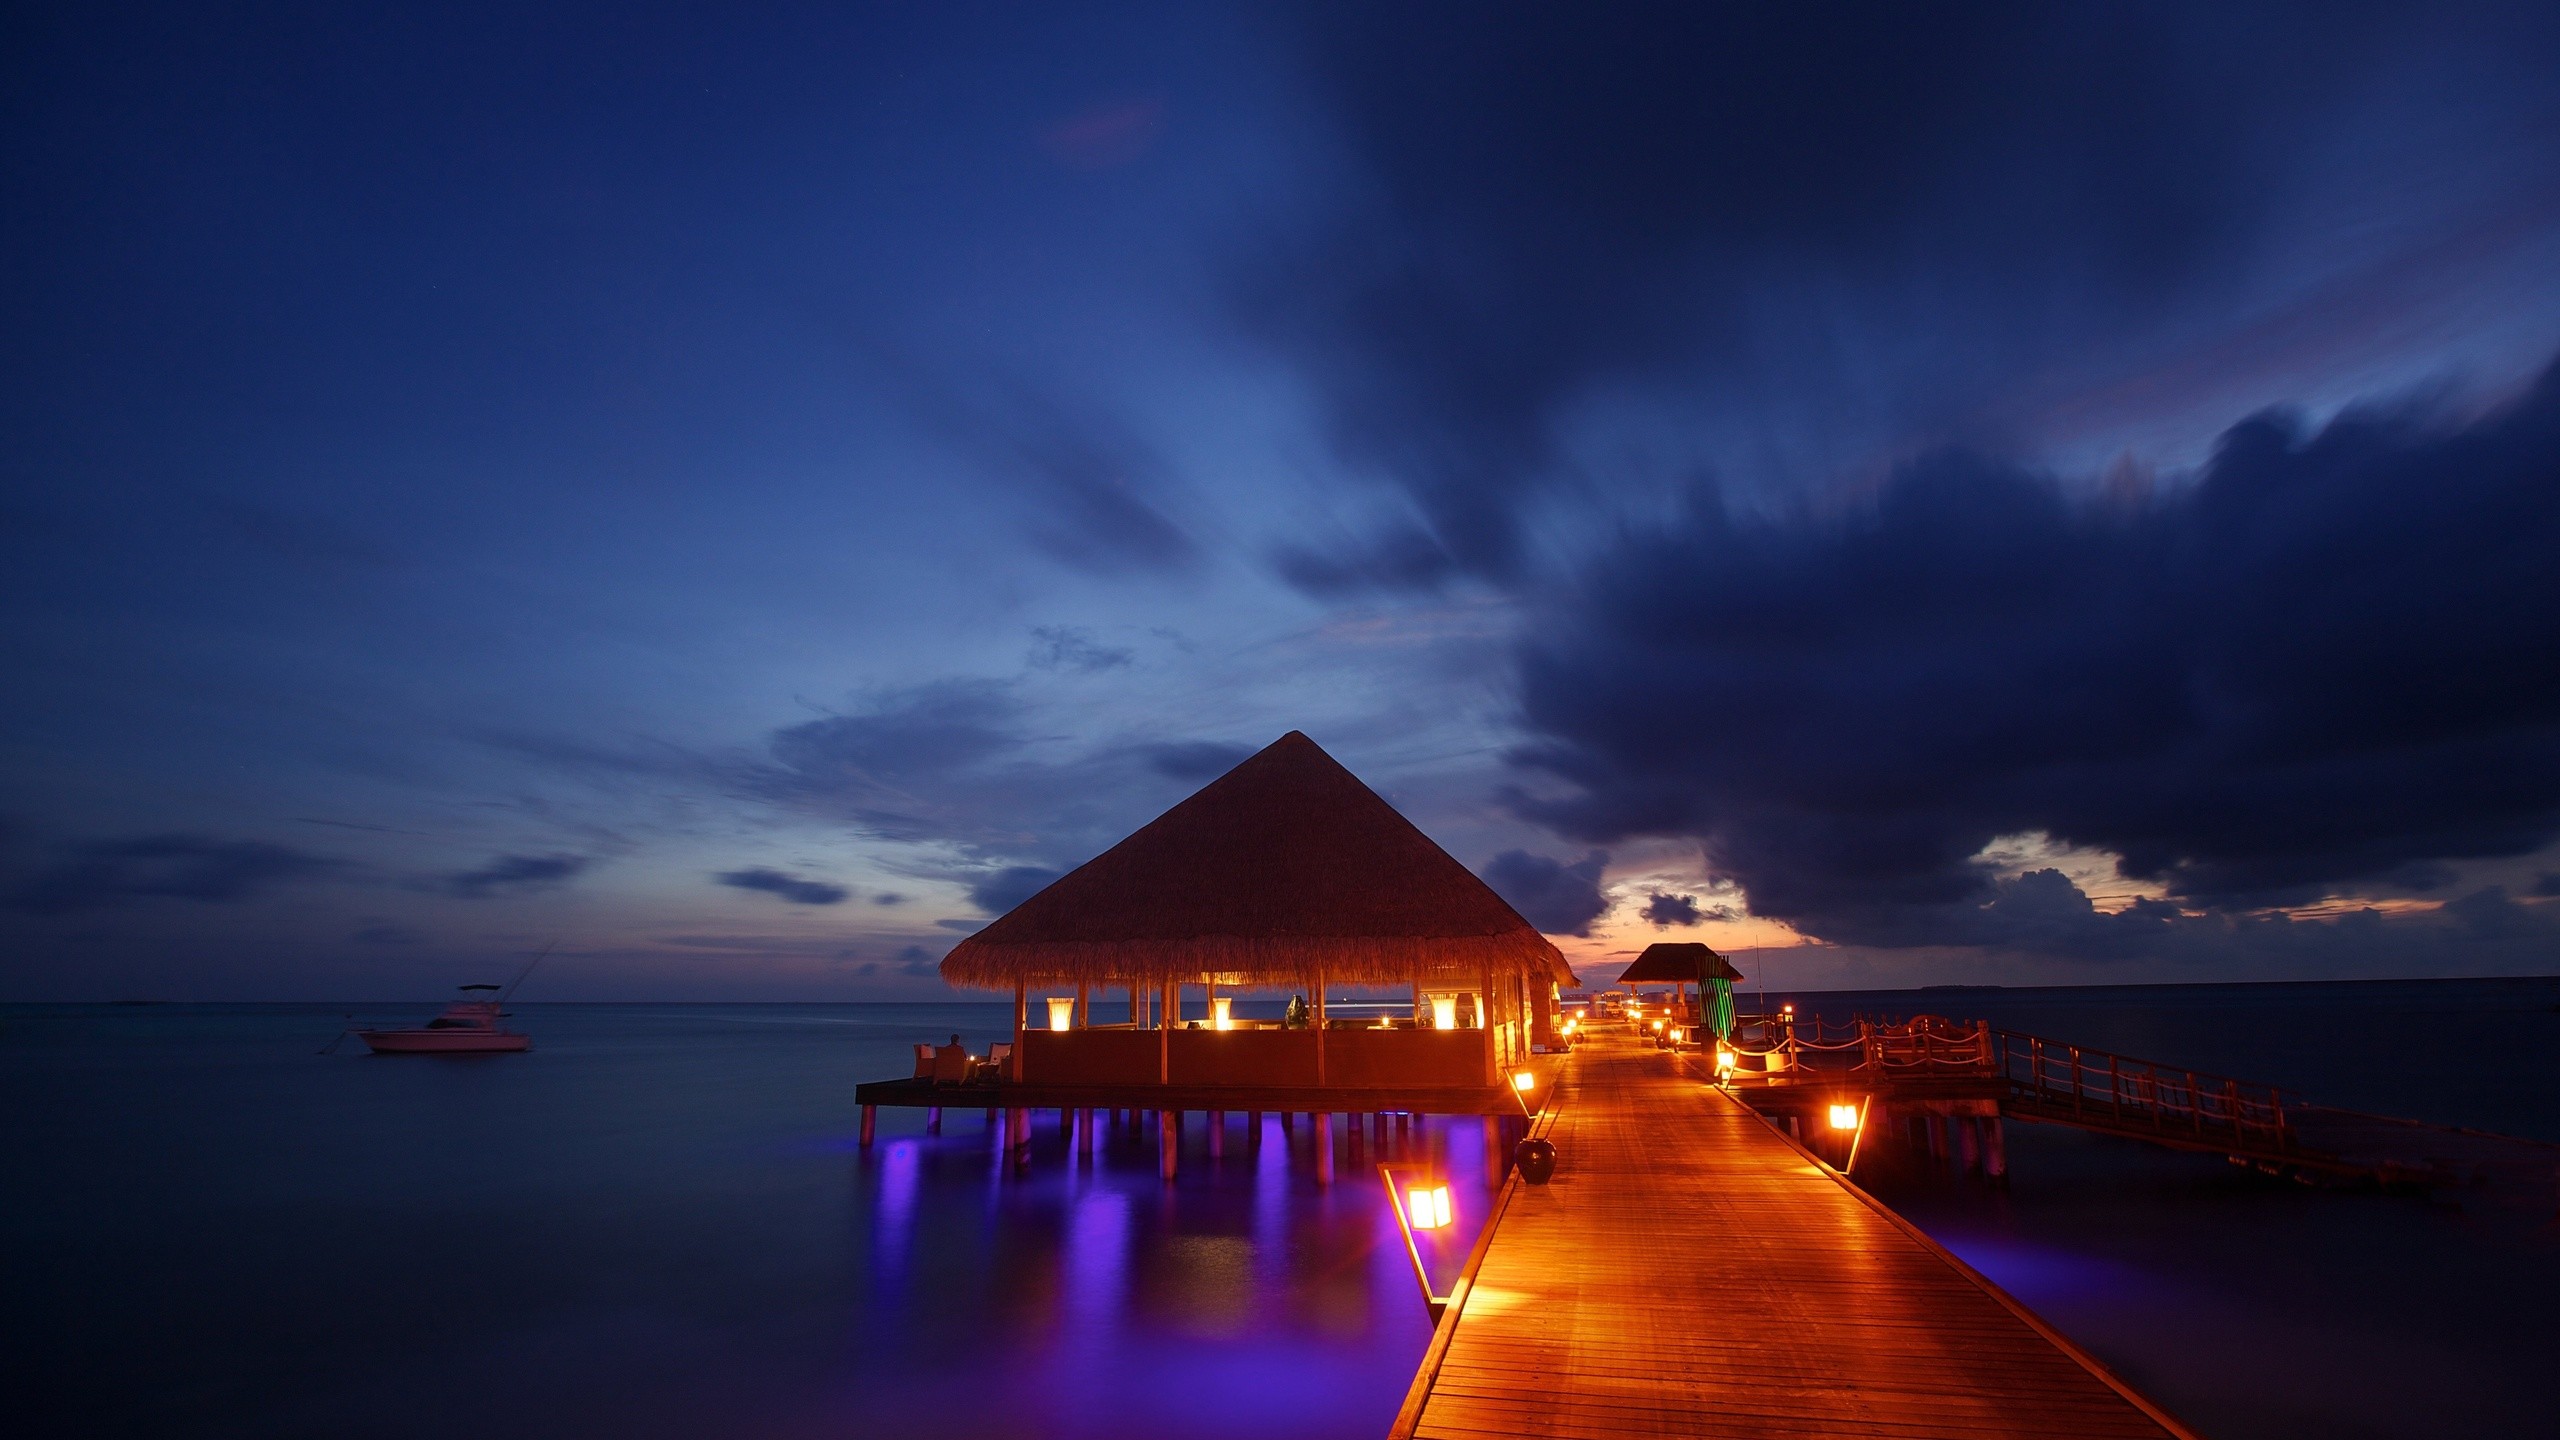 2560x1440 Beach House Maldives Wallpaper 18 - 2560 X 1440